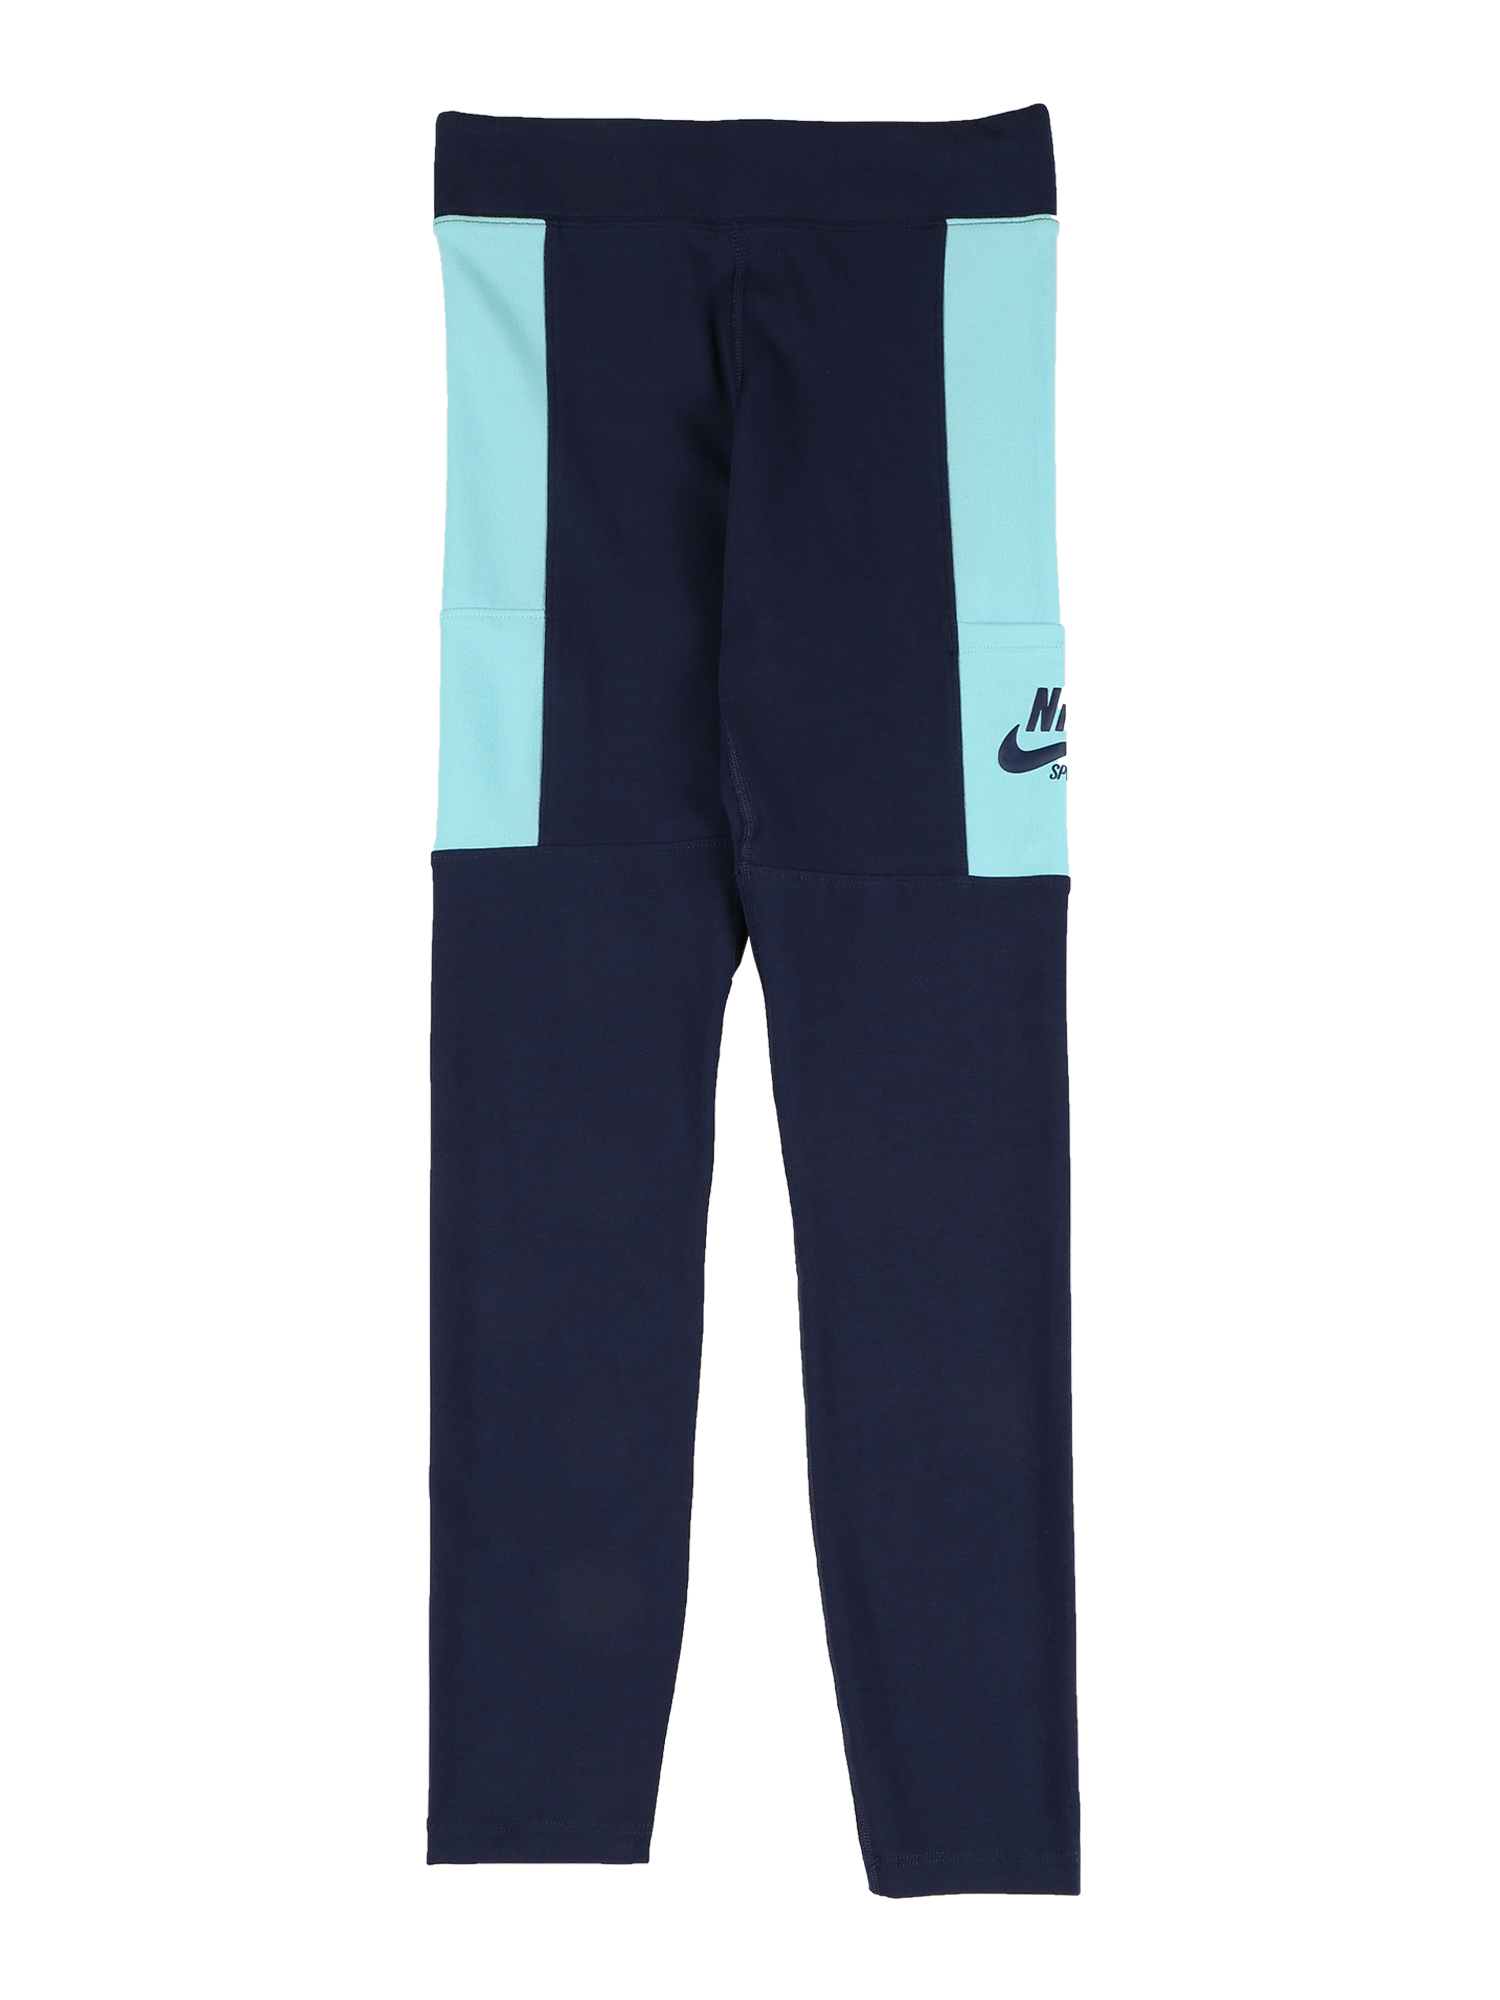 30D3s Bambini Nike Sportswear Leggings in Navy 